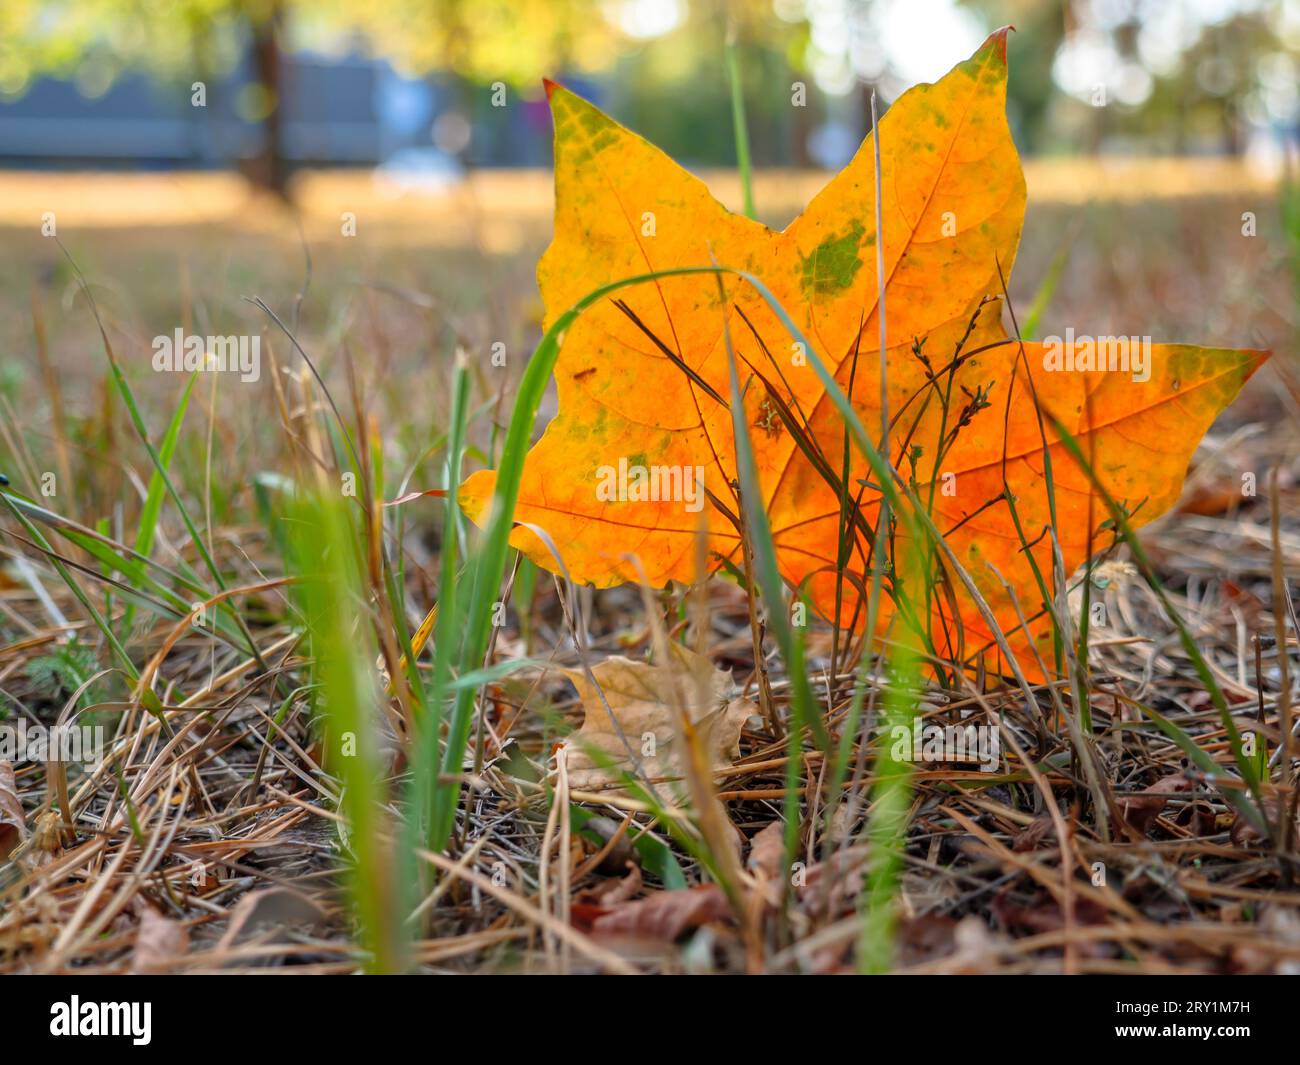 La bella foglia d'acero autunnale arancione e verde cadde dall'albero e si incastrò sulla costola nell'erba secca, Foto Stock